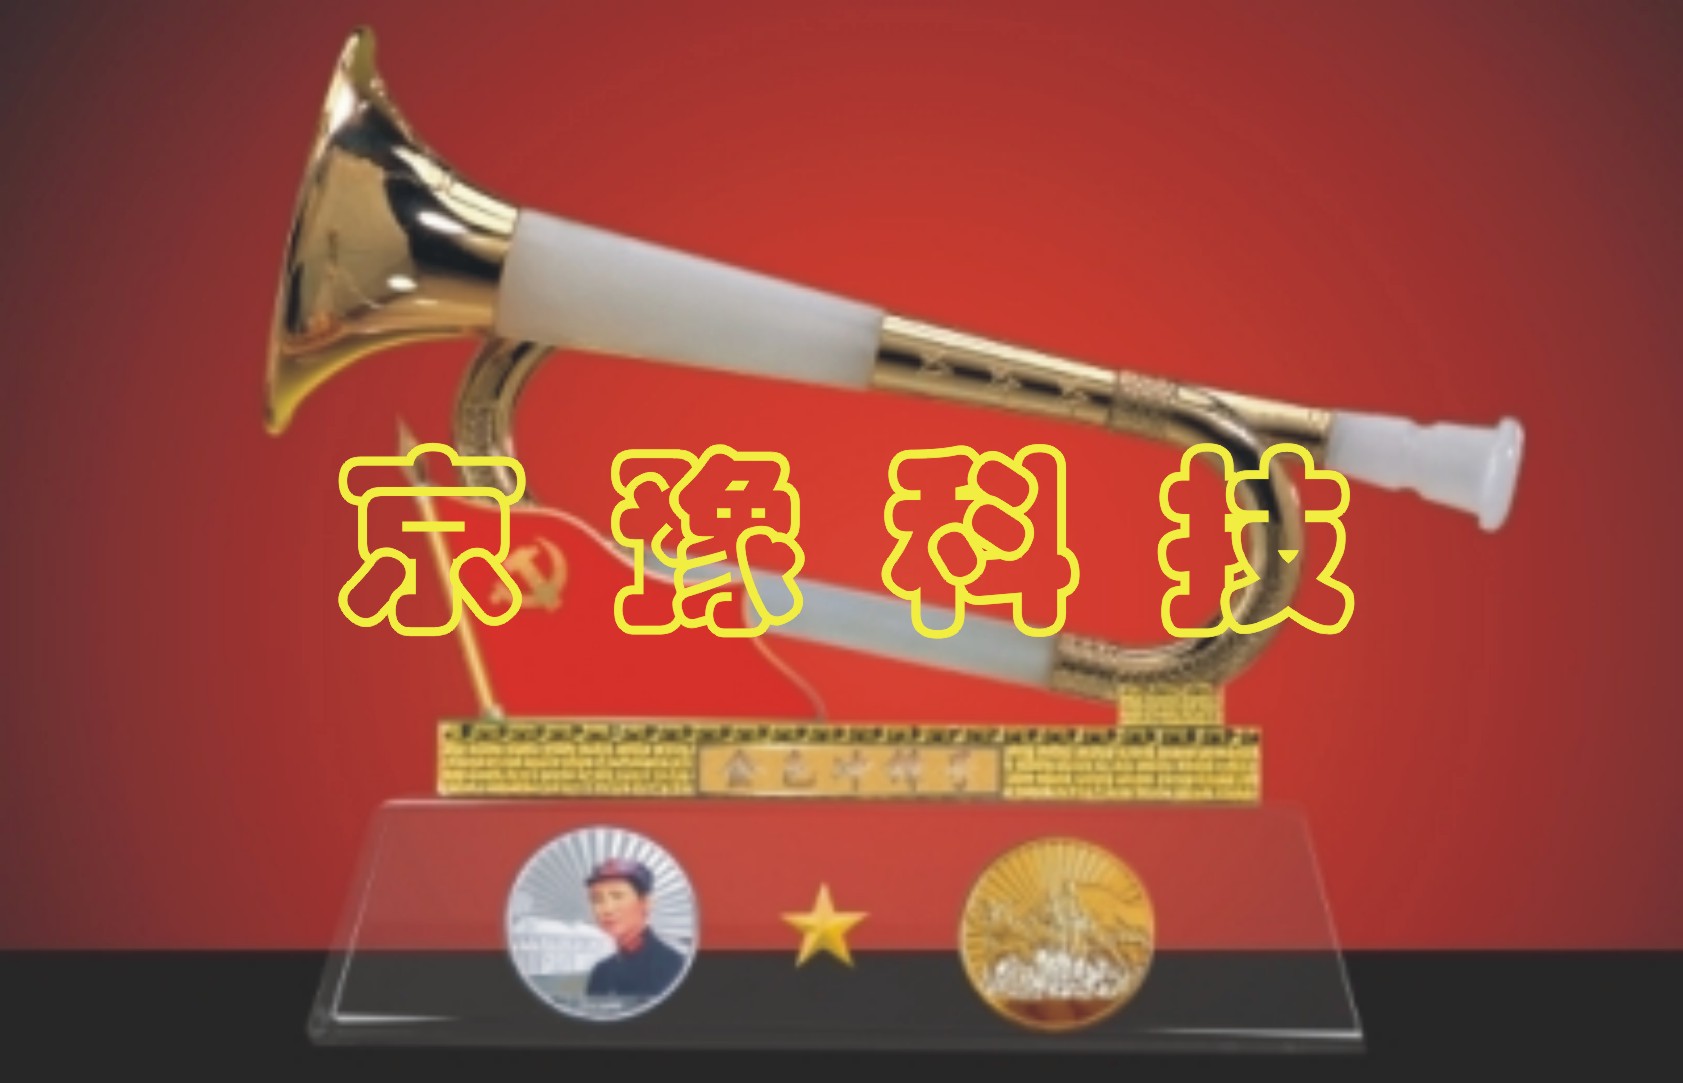 镀金机 金卡机 上色机 堆金机  北京铜版画制作设备